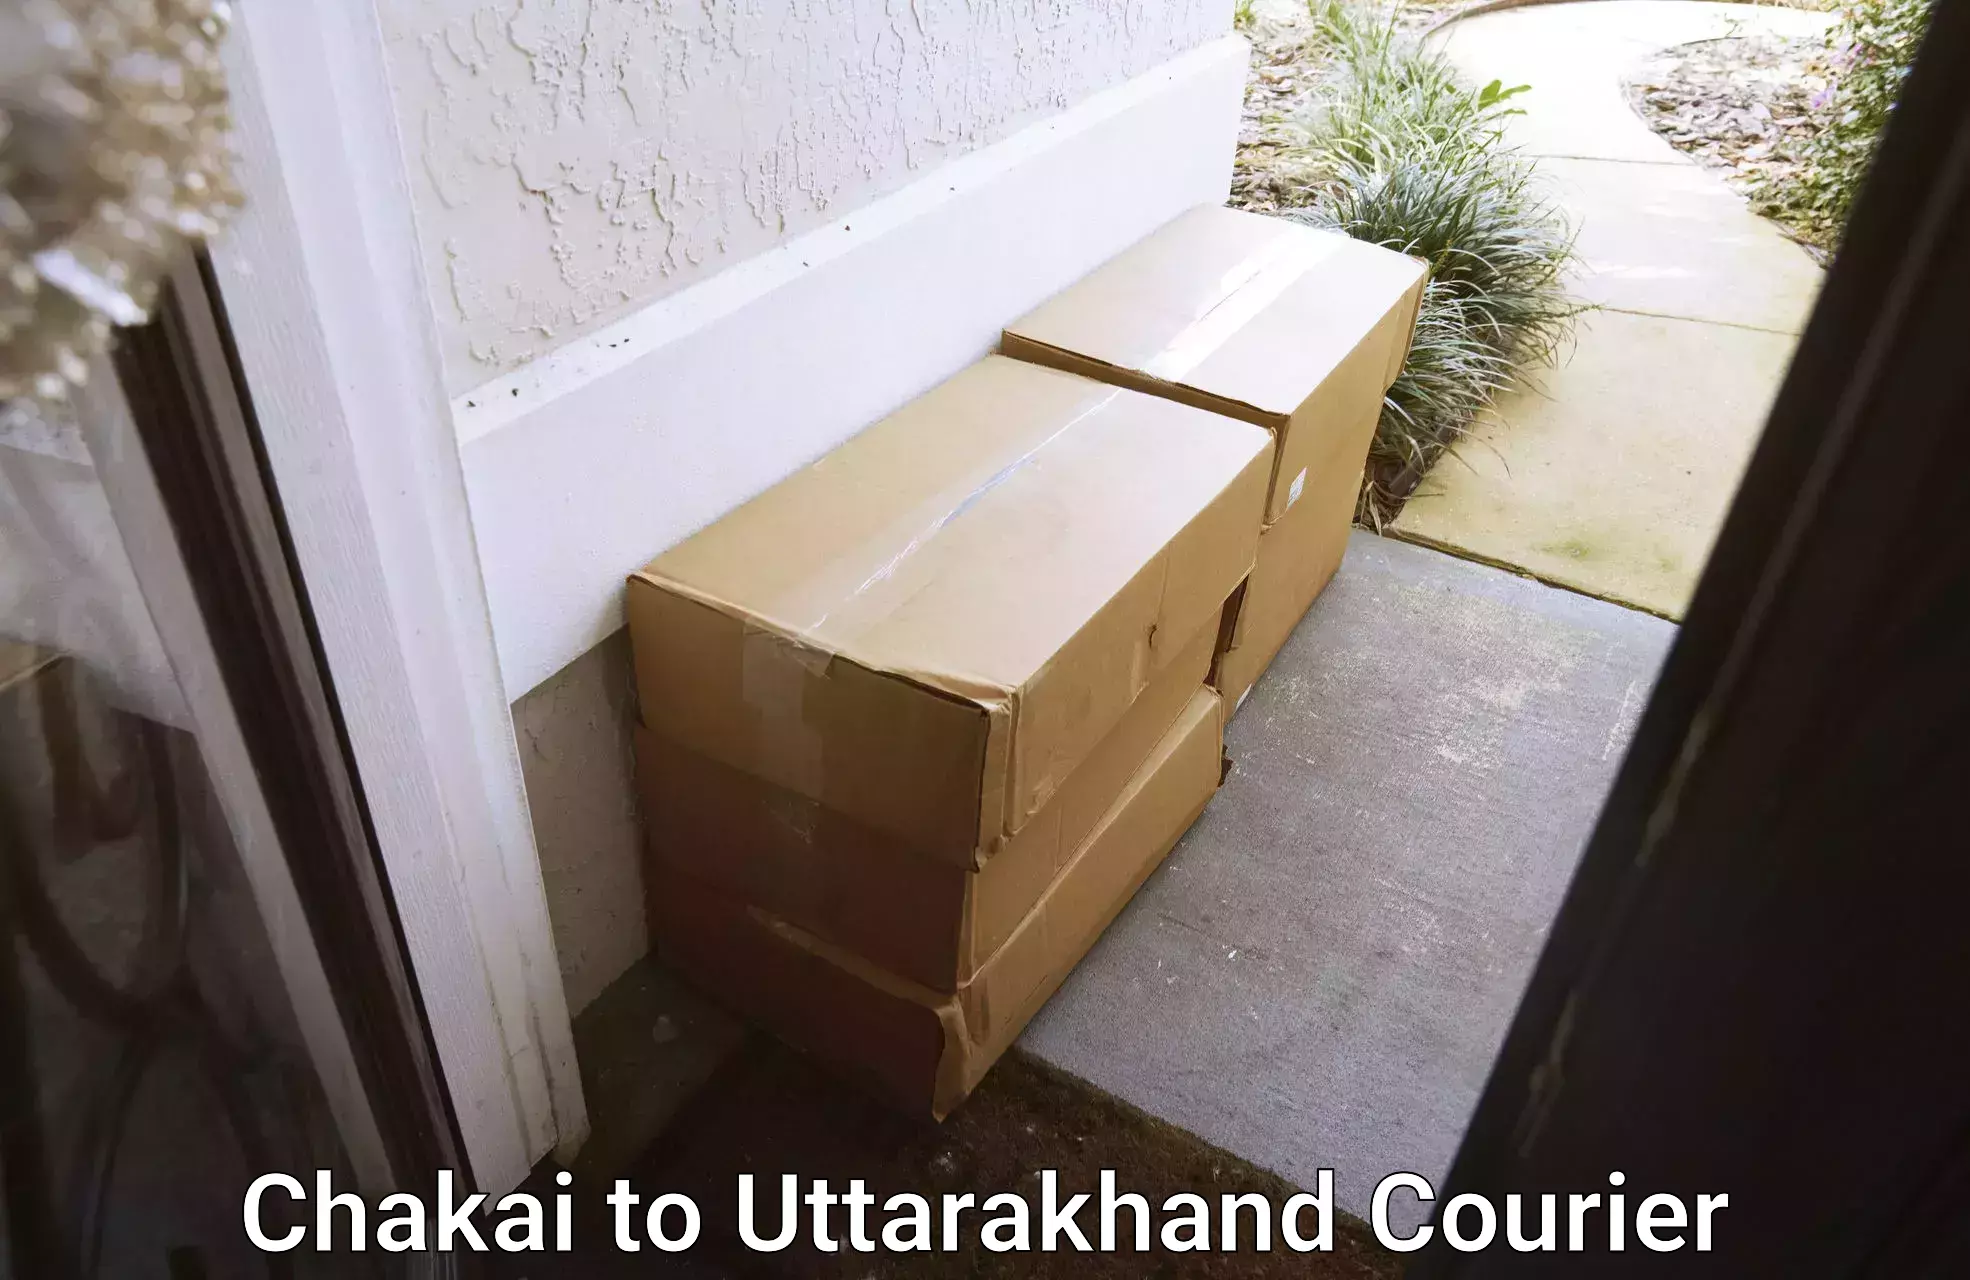 Full-service household moving in Chakai to Uttarakhand